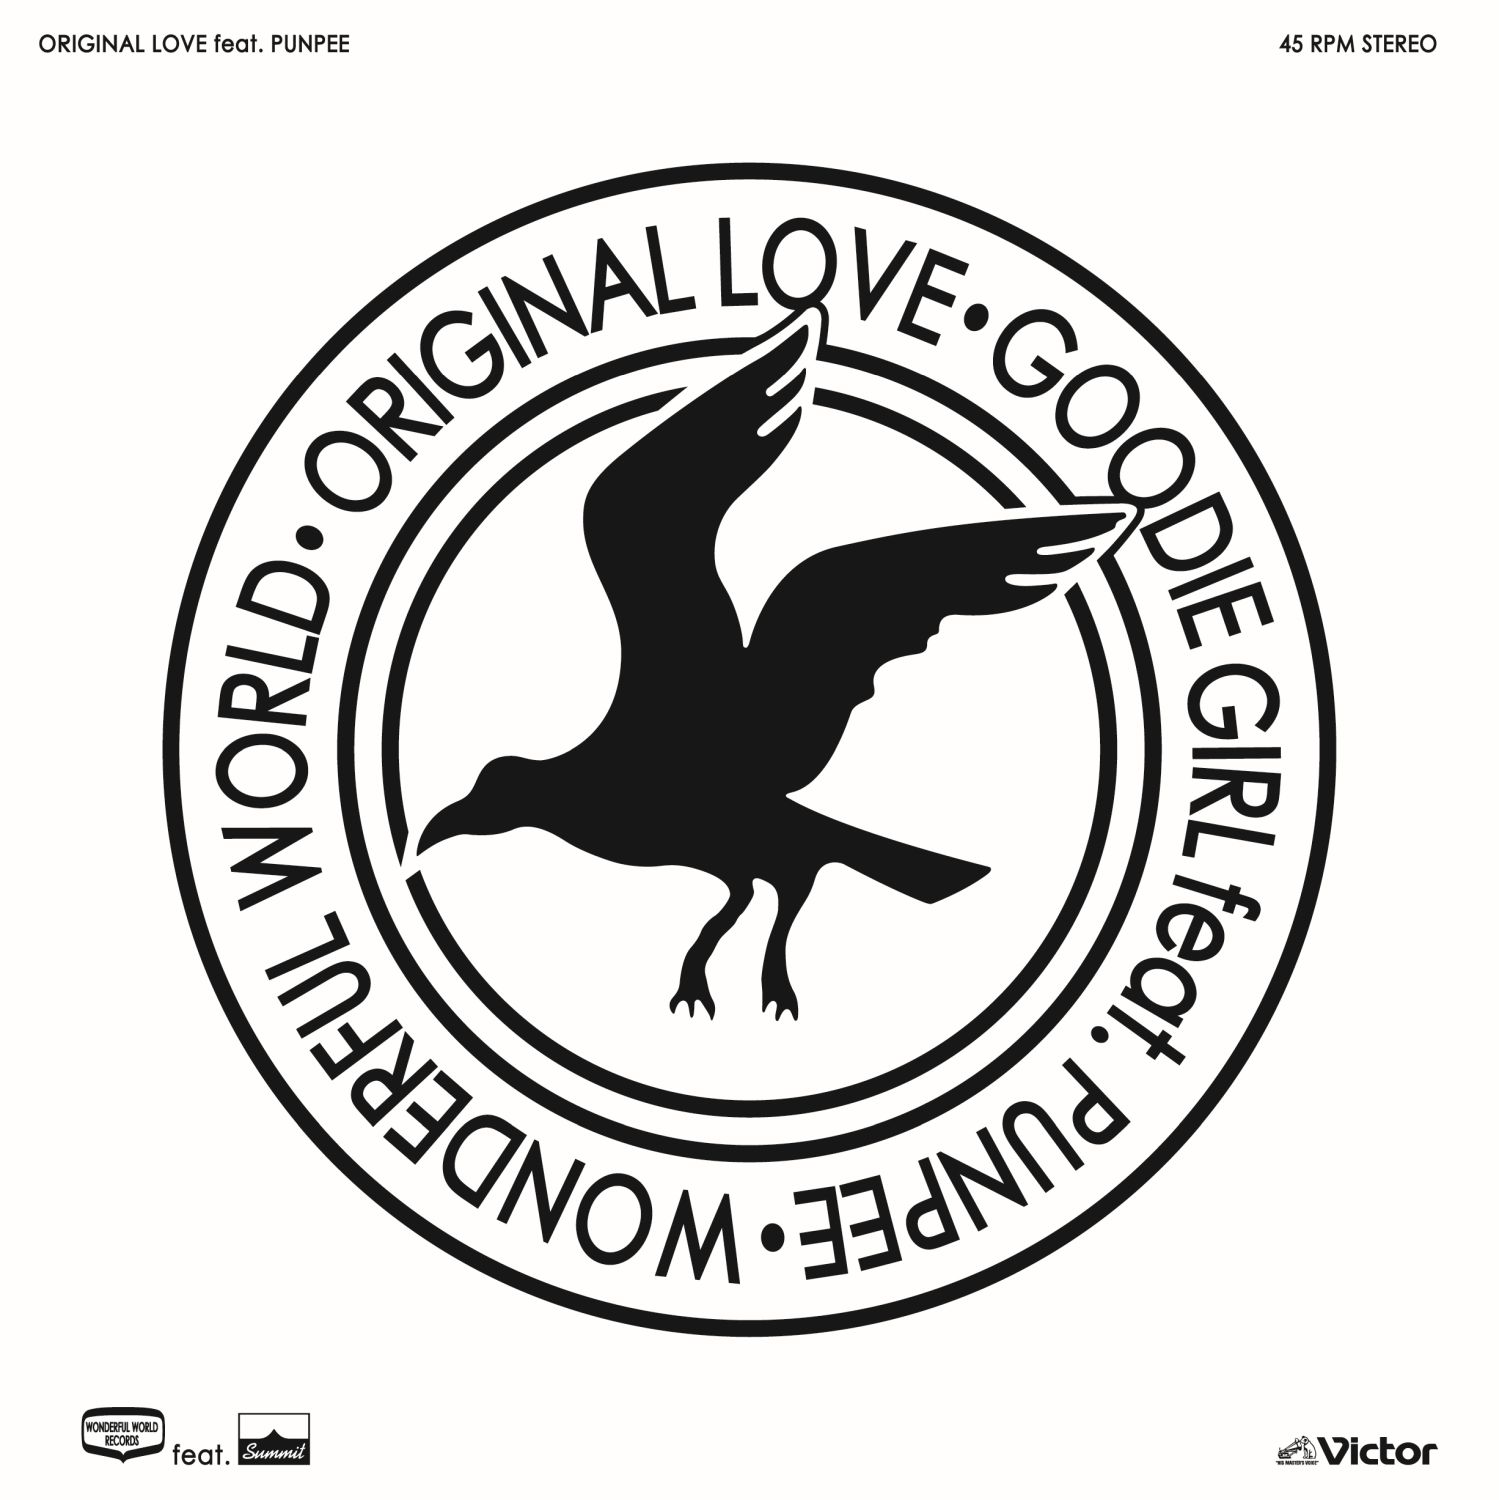 ORIGINAL LOVEが4年ぶりとなるアルバム『bless You!』の詳細を発表 | PUNPEEを迎えた先行アナログ盤のリリースも決定 -  FNMNL (フェノメナル)